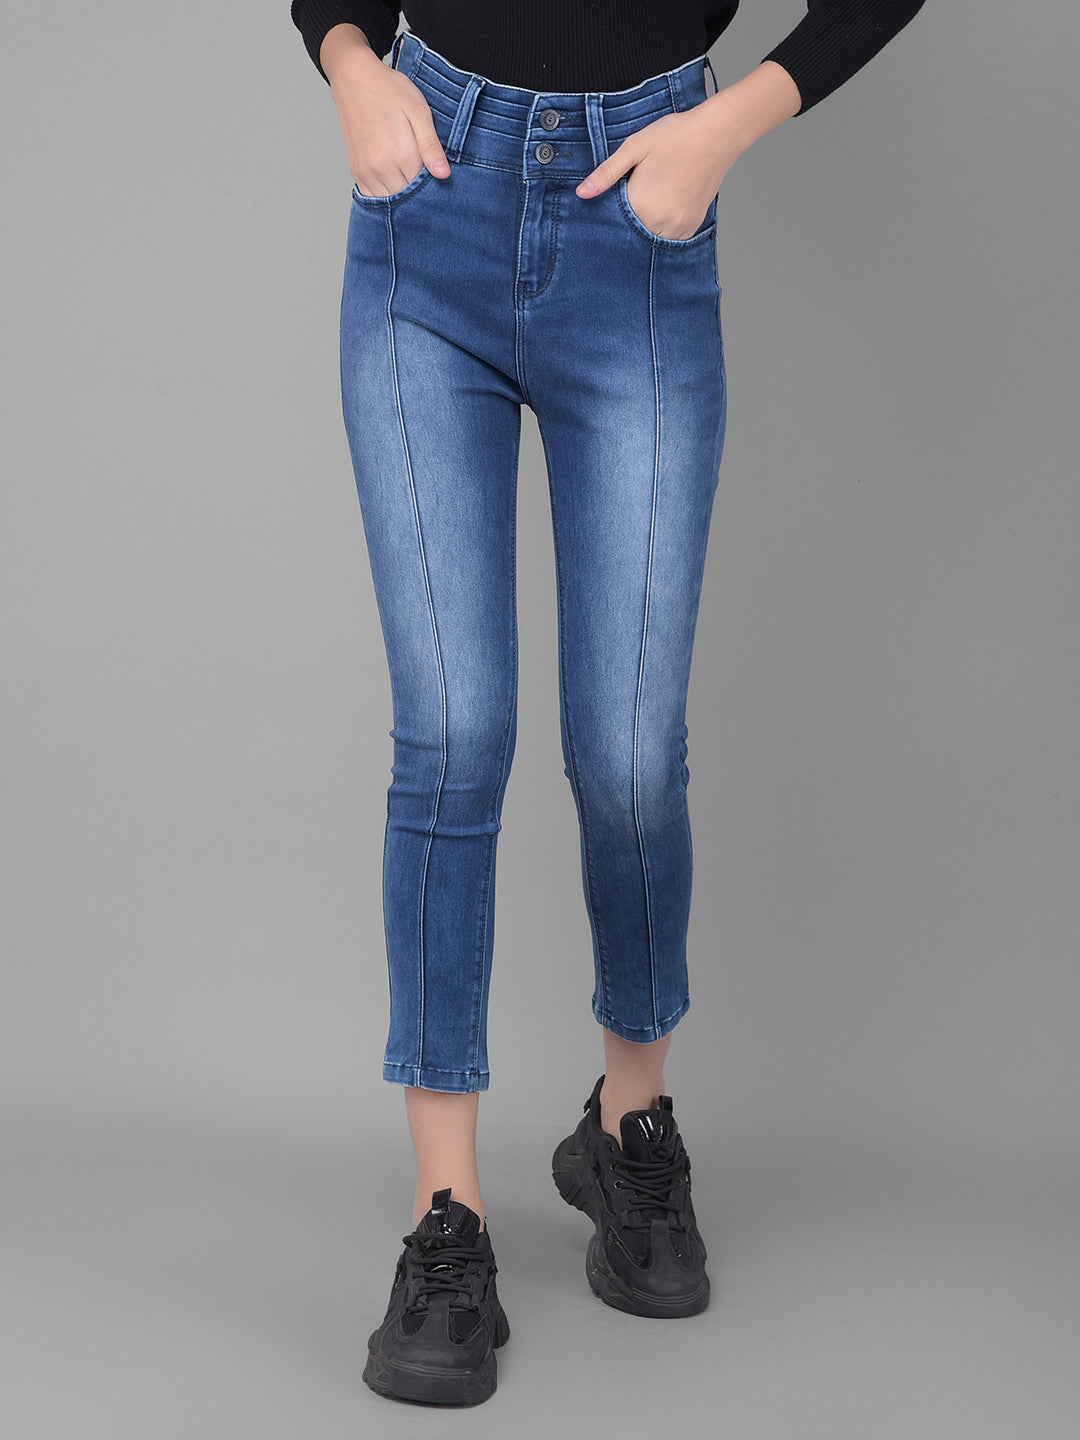 Navy Blue Light Fade High Waist Jeans-Women Jeans-Crimsoune Club